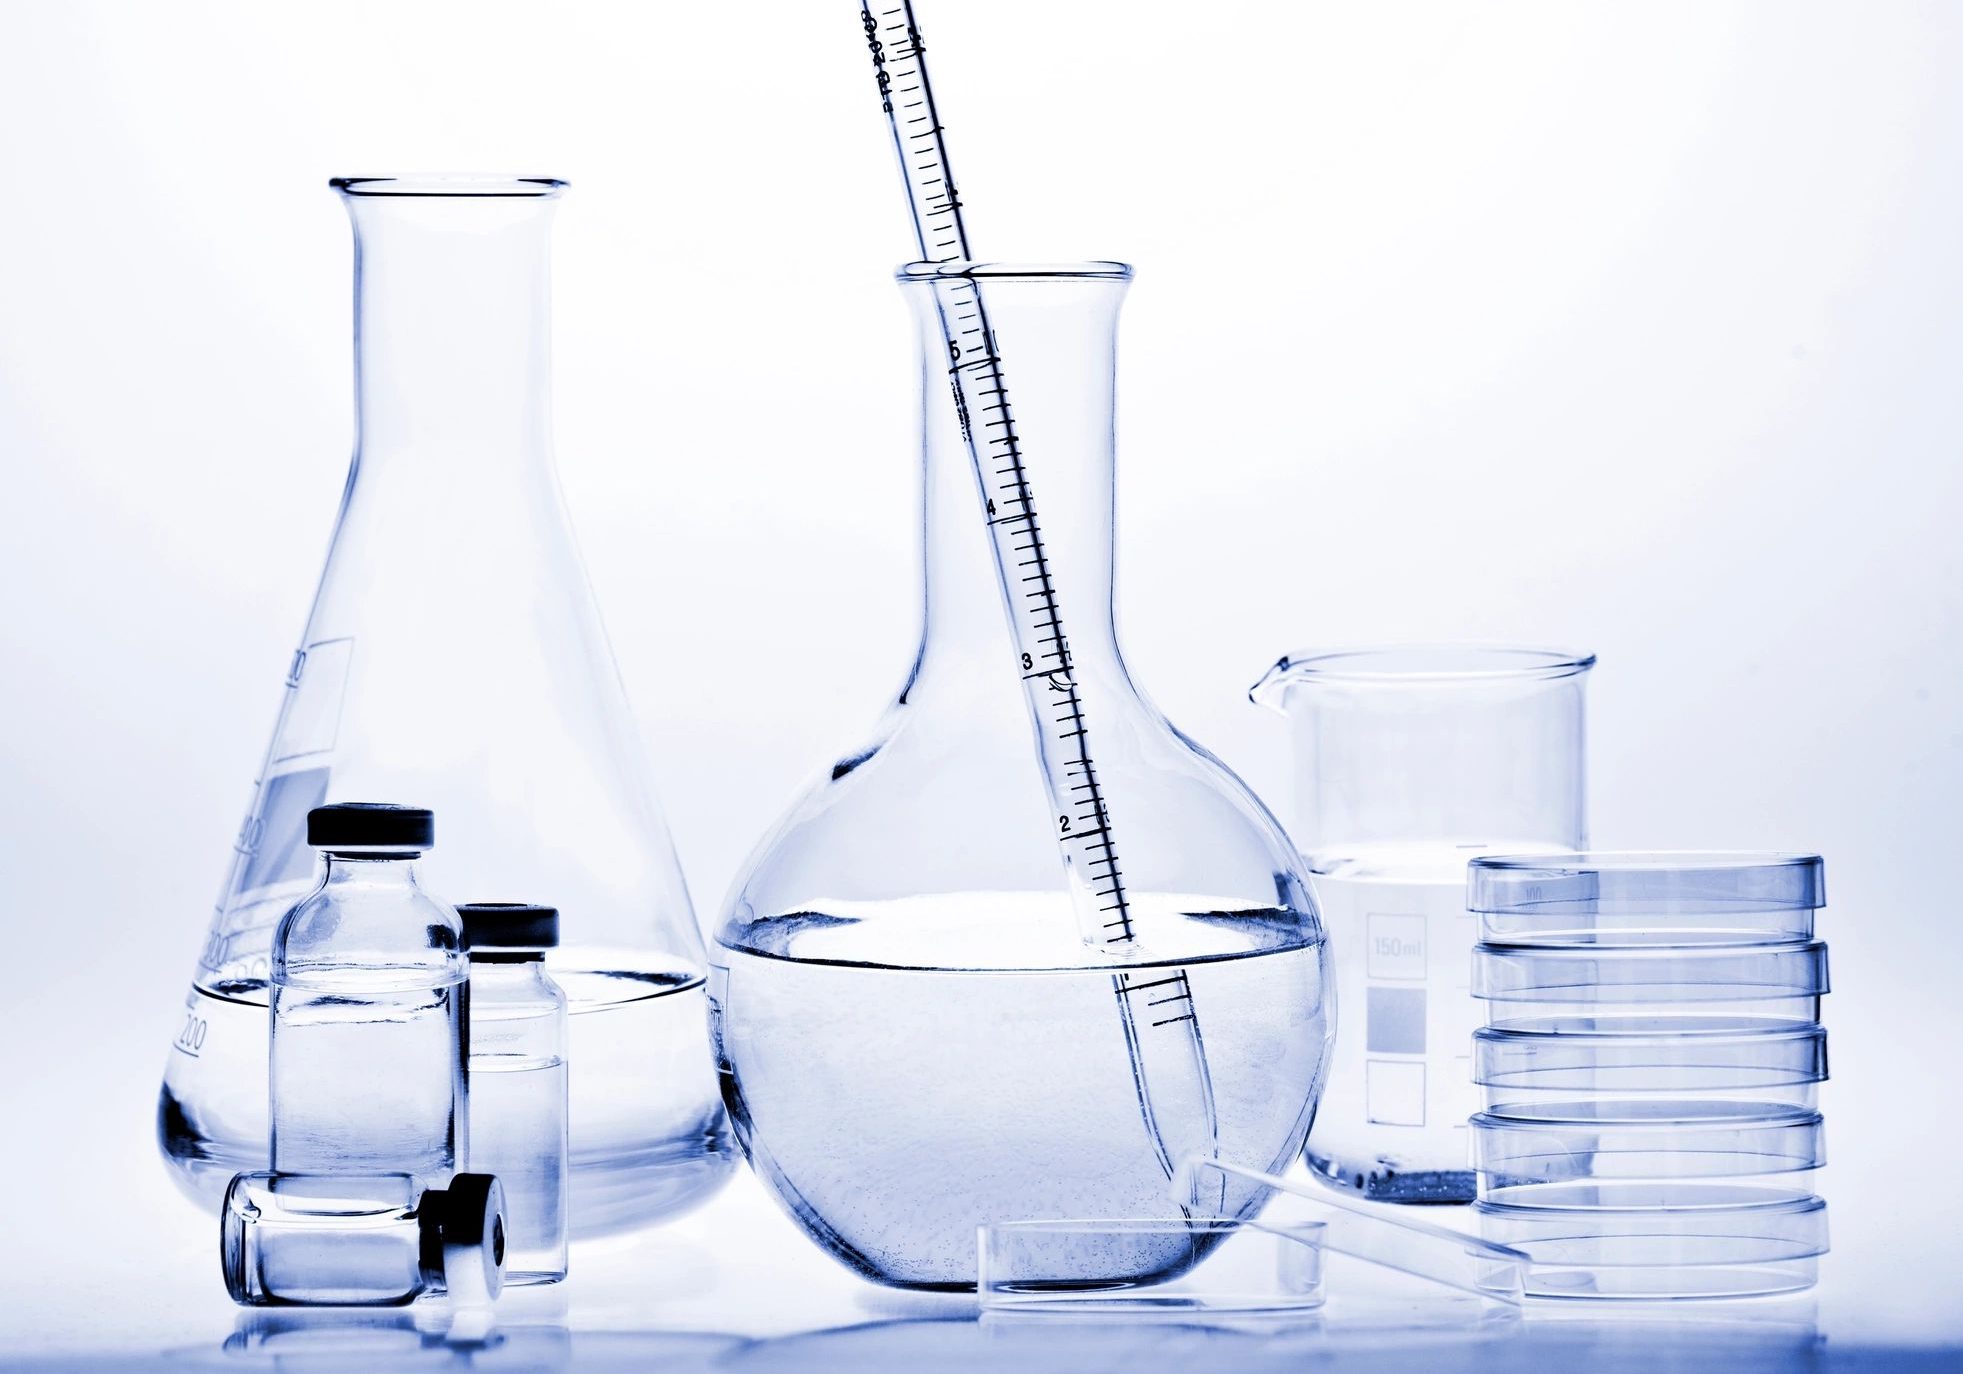 Σύνθεση ουρίας: Ένα τυχαίο πείραμα που γεφύρωσε την Οργανική με την Ανόργανη Χημεία